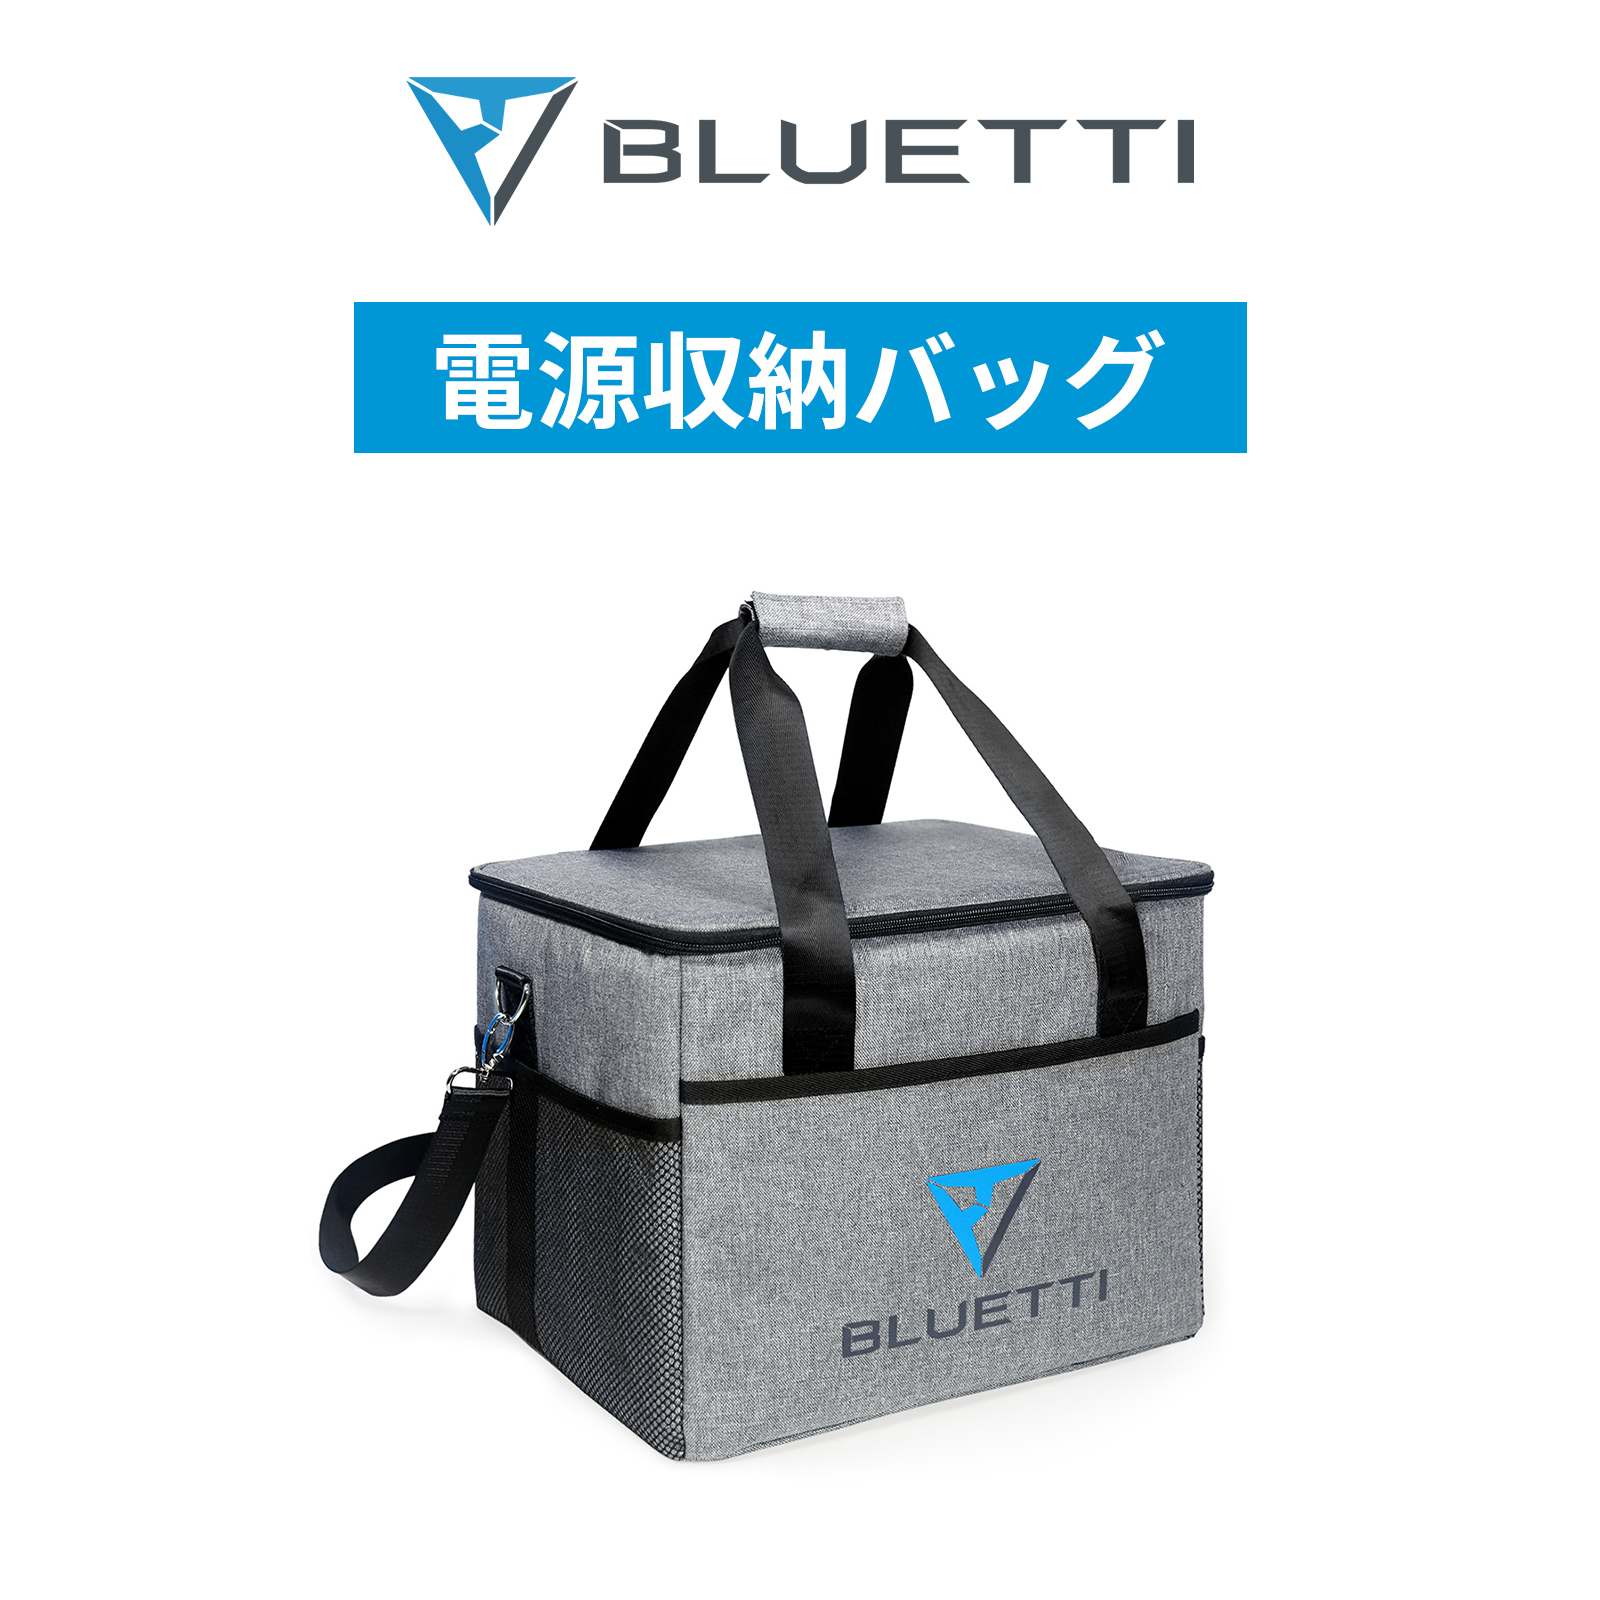 BLUETTI 収納バッグ ポータブル電源 保護ケース アウトドア 旅行用 耐 